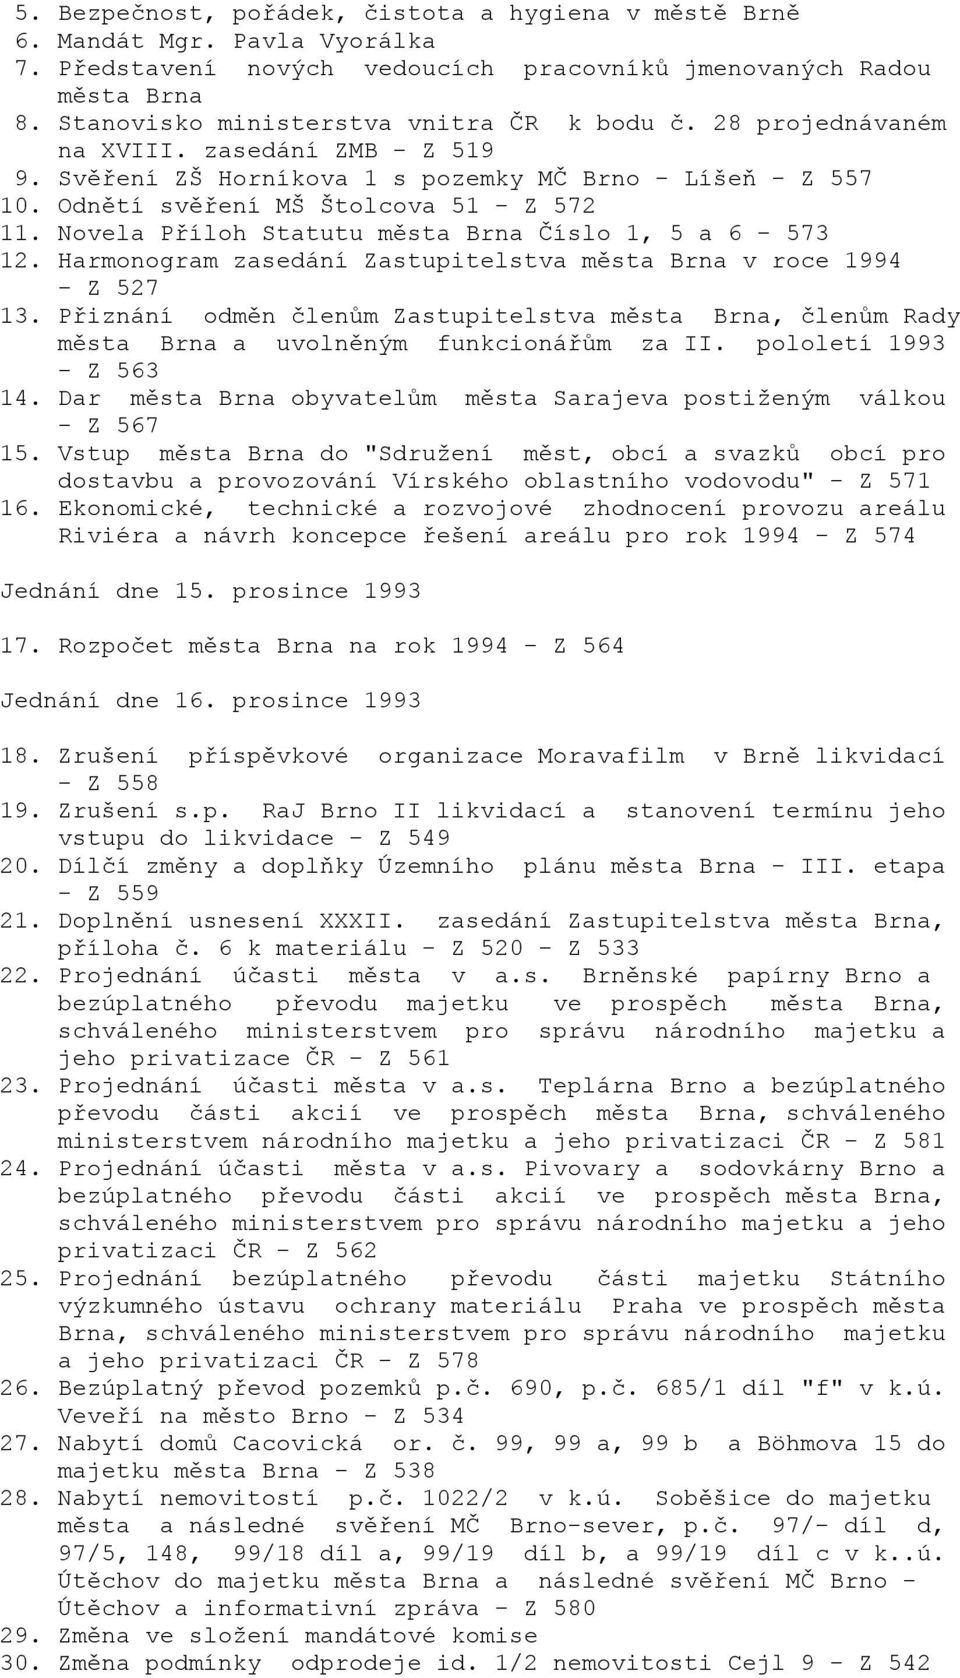 Novela Příloh Statutu města Brna Číslo 1, 5 a 6-573 12. Harmonogram zasedání Zastupitelstva města Brna v roce 1994 - Z 527 13.